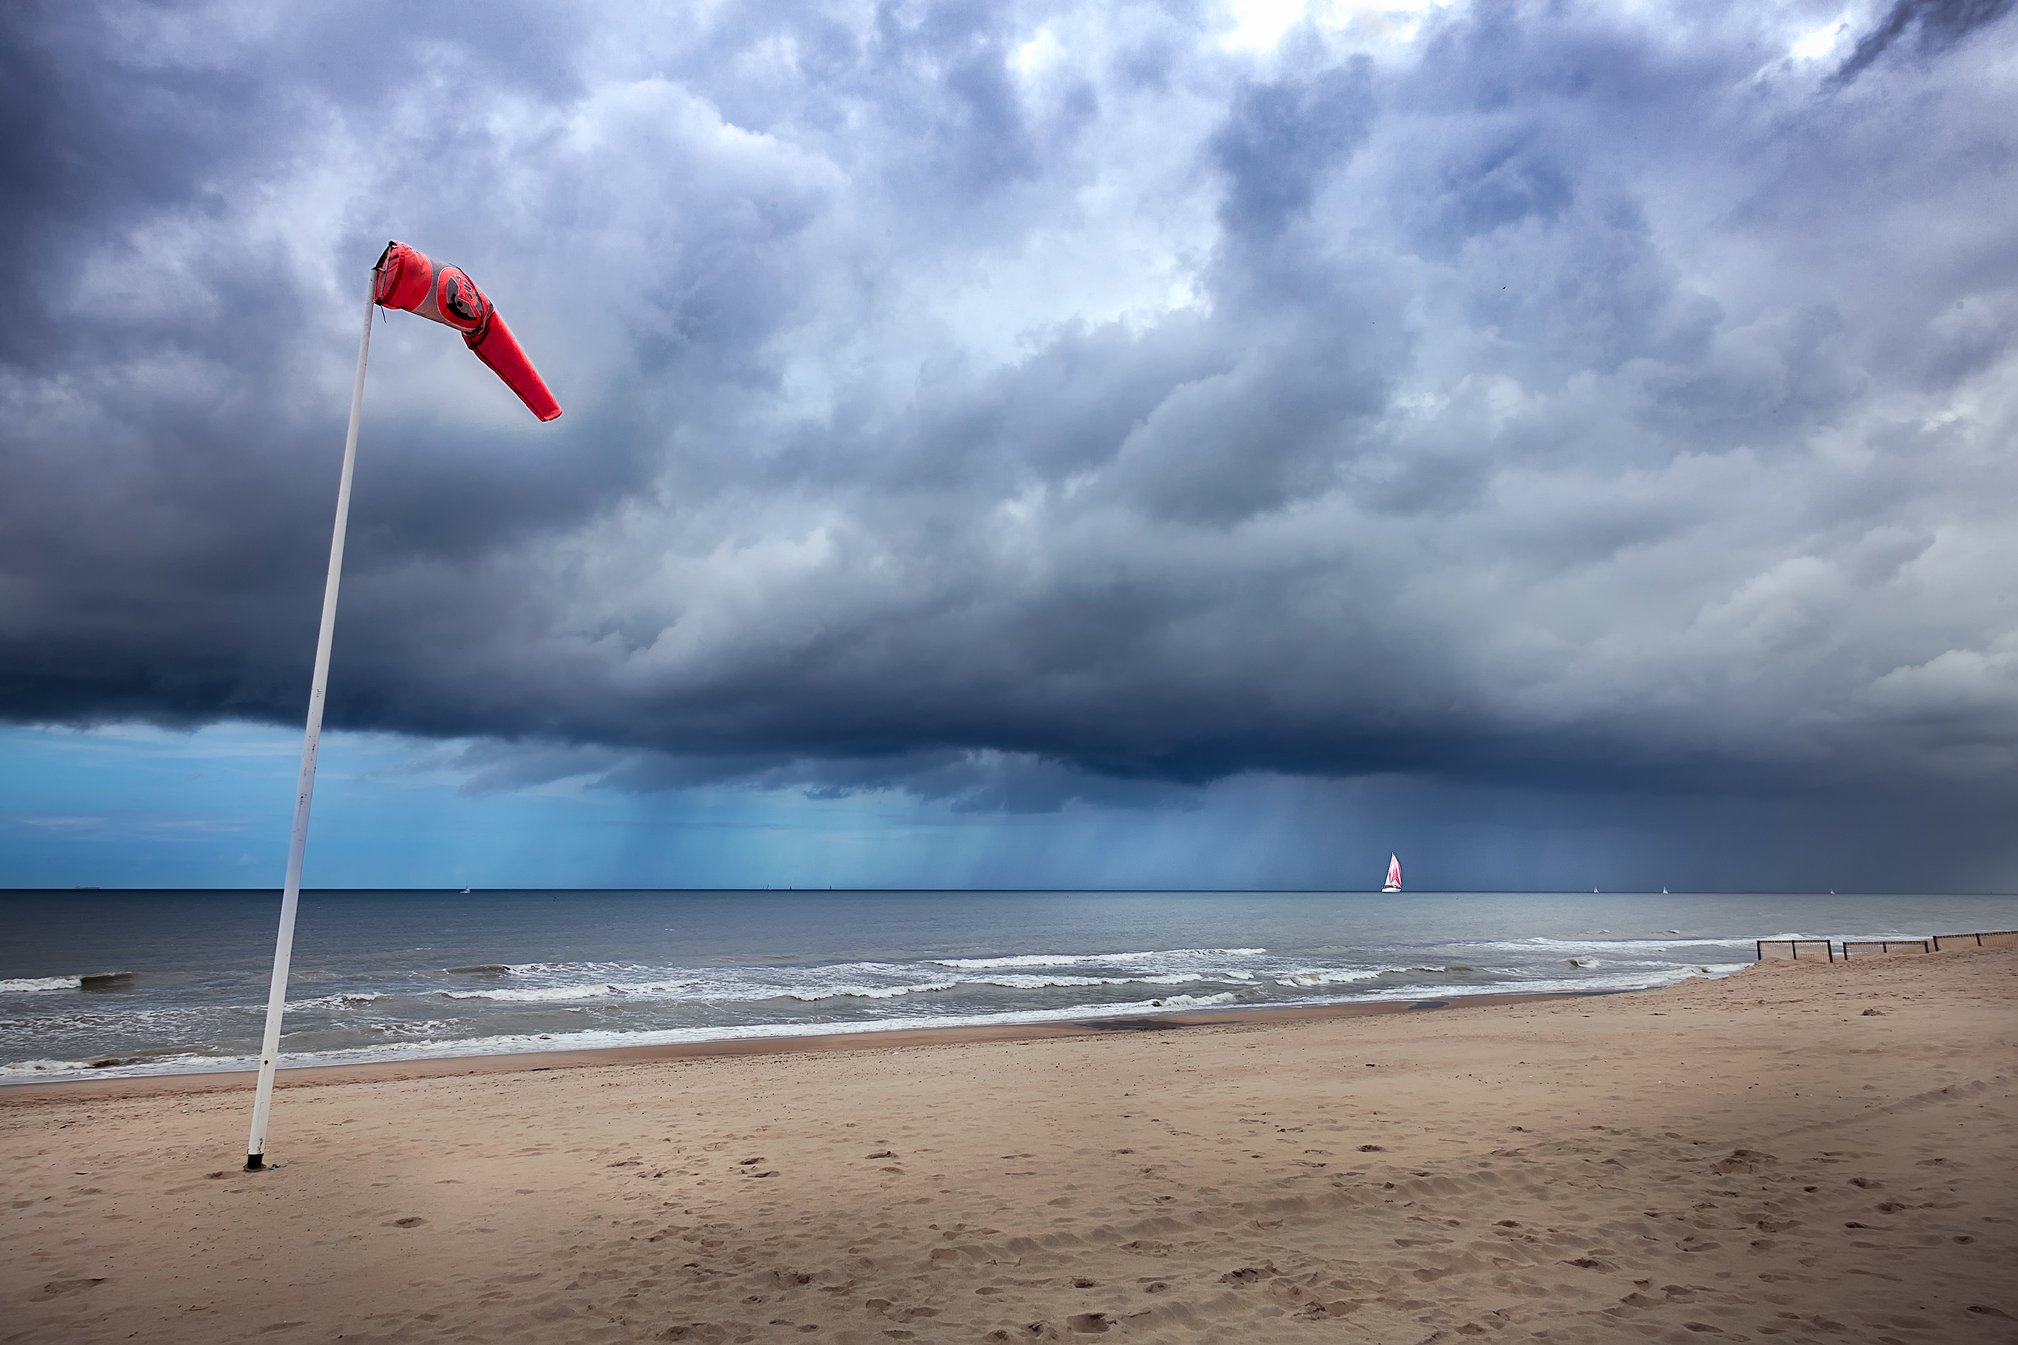 ветер, шторм, яхта, пляж, песок, северное море, бельгия, Андрей Огнев